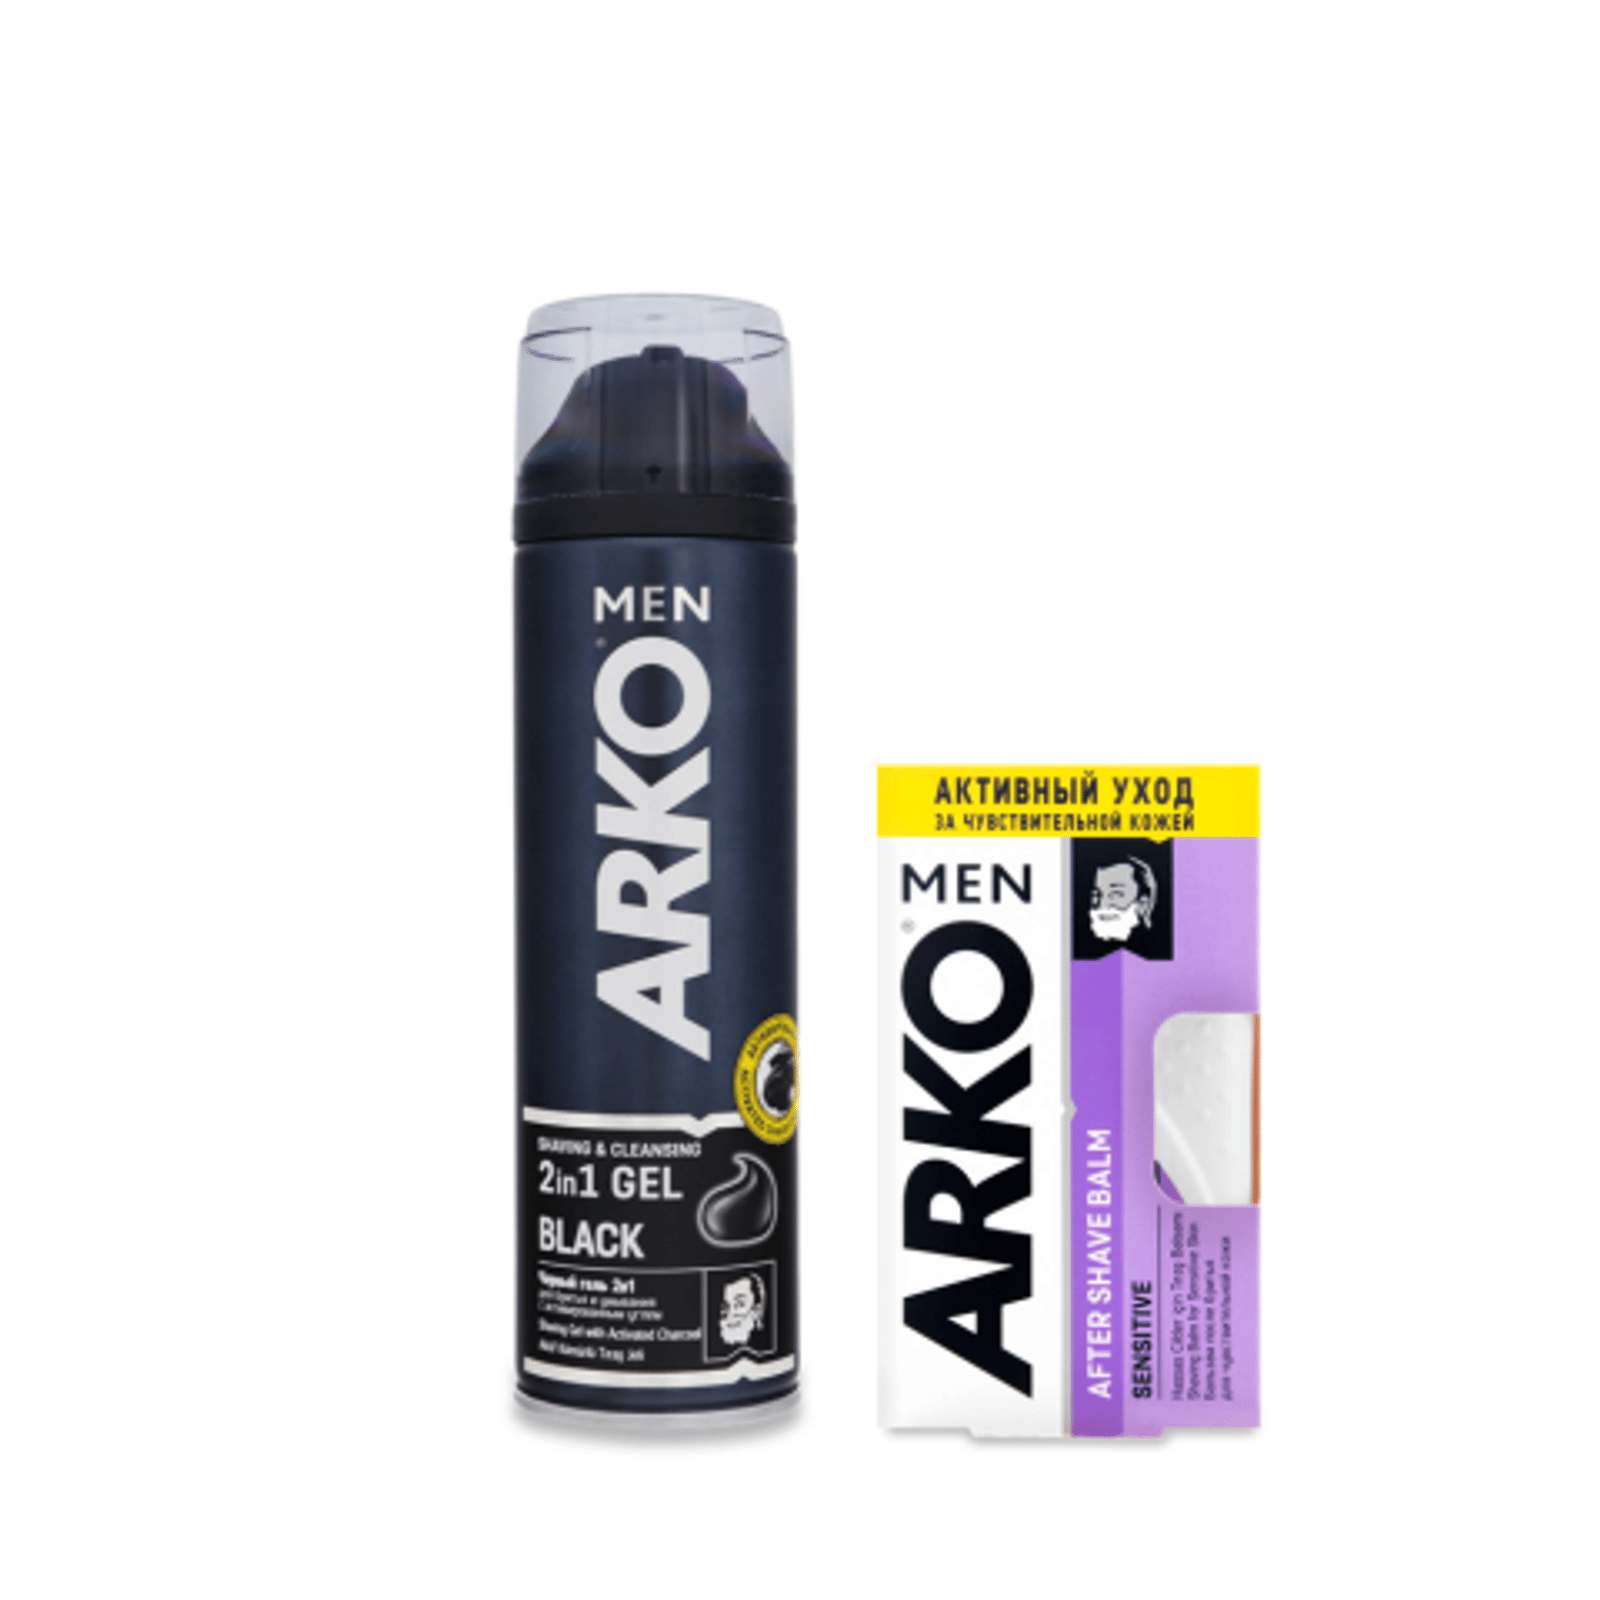 Разом дешевше піна для гоління та бальзам ARKO MEN - 1